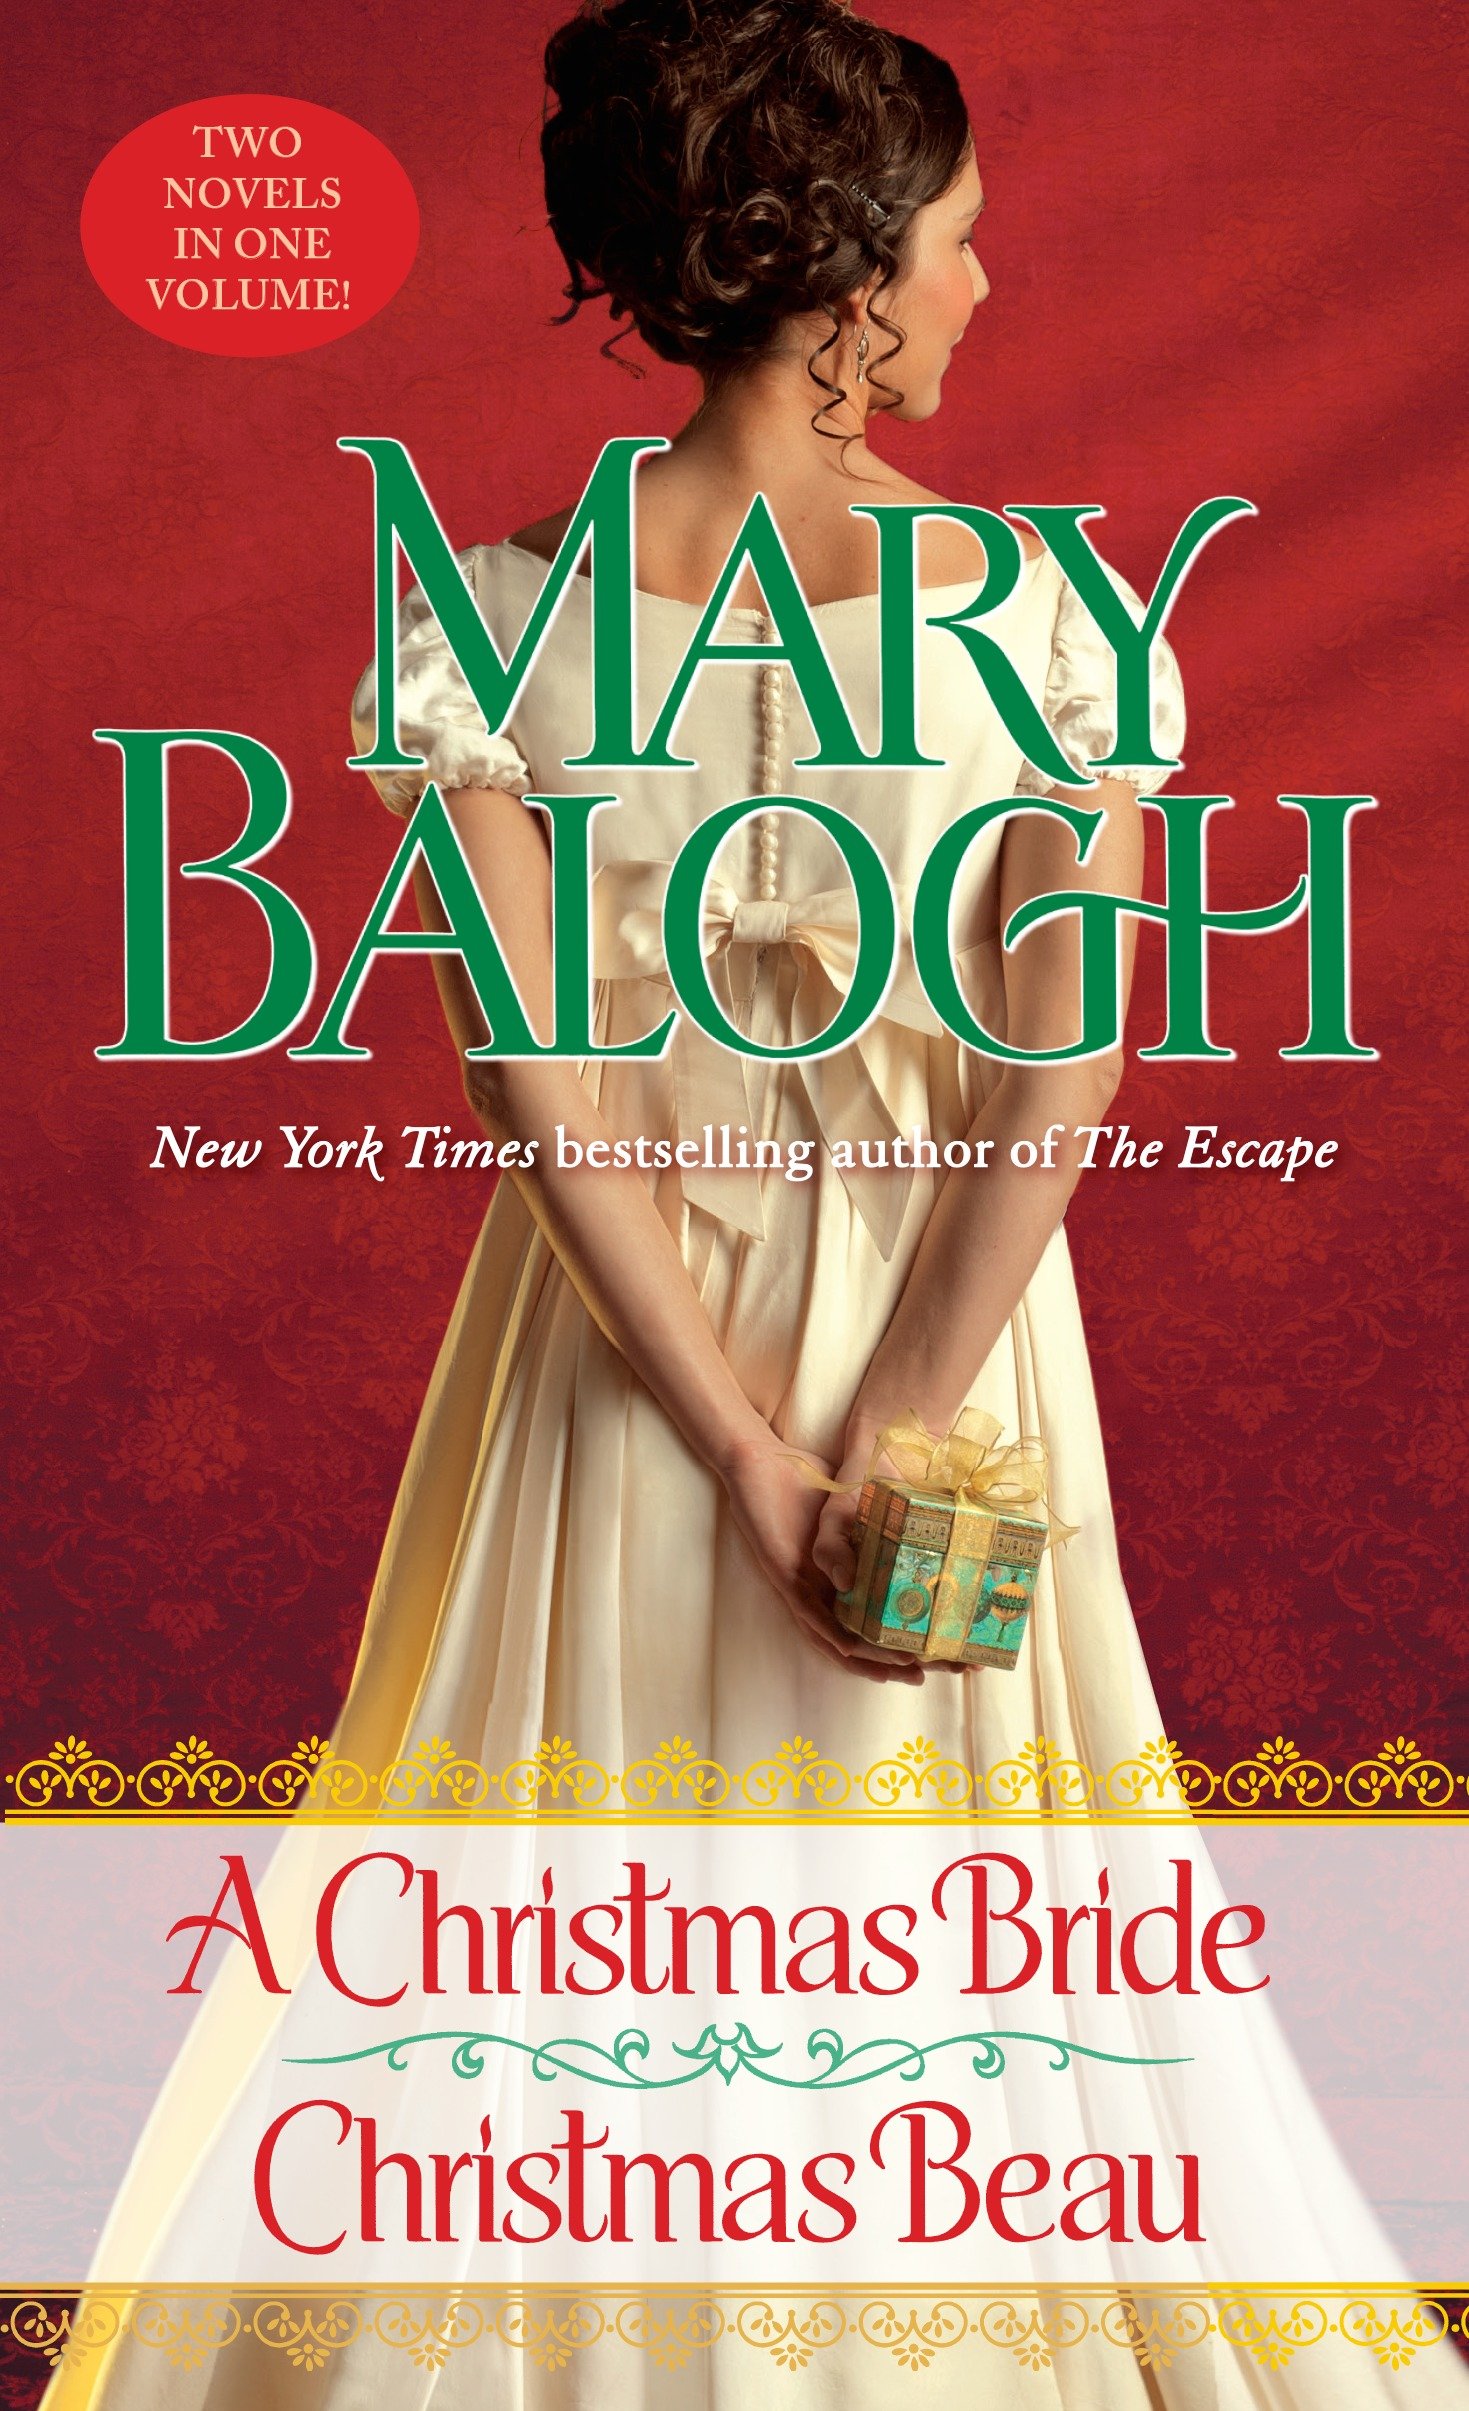 A Christmas bride Christmas beau cover image